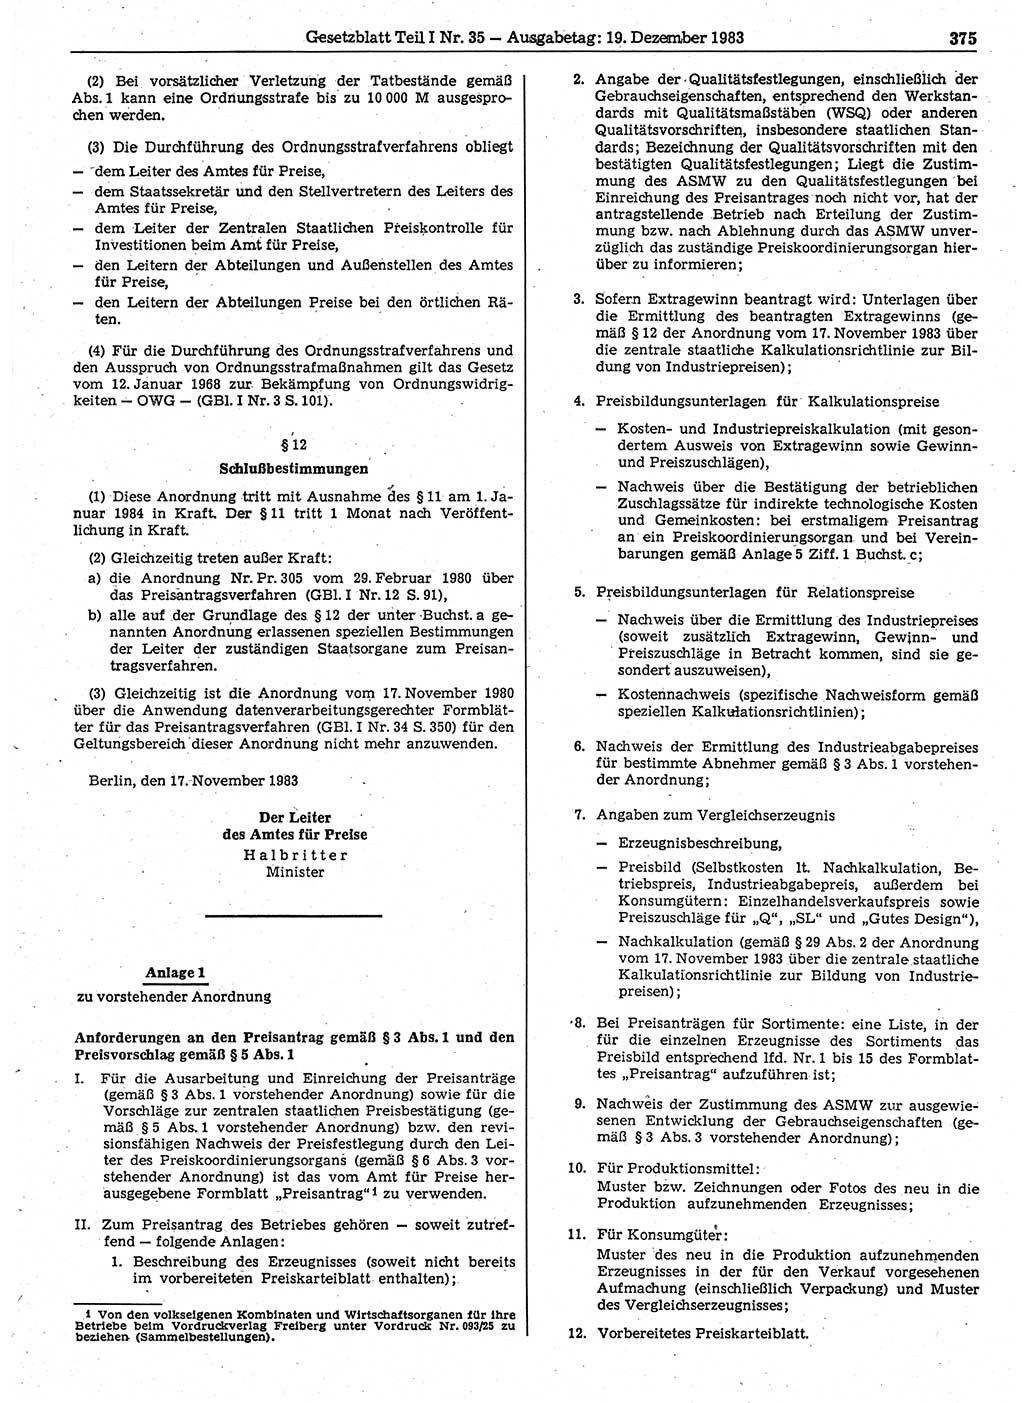 Gesetzblatt (GBl.) der Deutschen Demokratischen Republik (DDR) Teil Ⅰ 1983, Seite 375 (GBl. DDR Ⅰ 1983, S. 375)